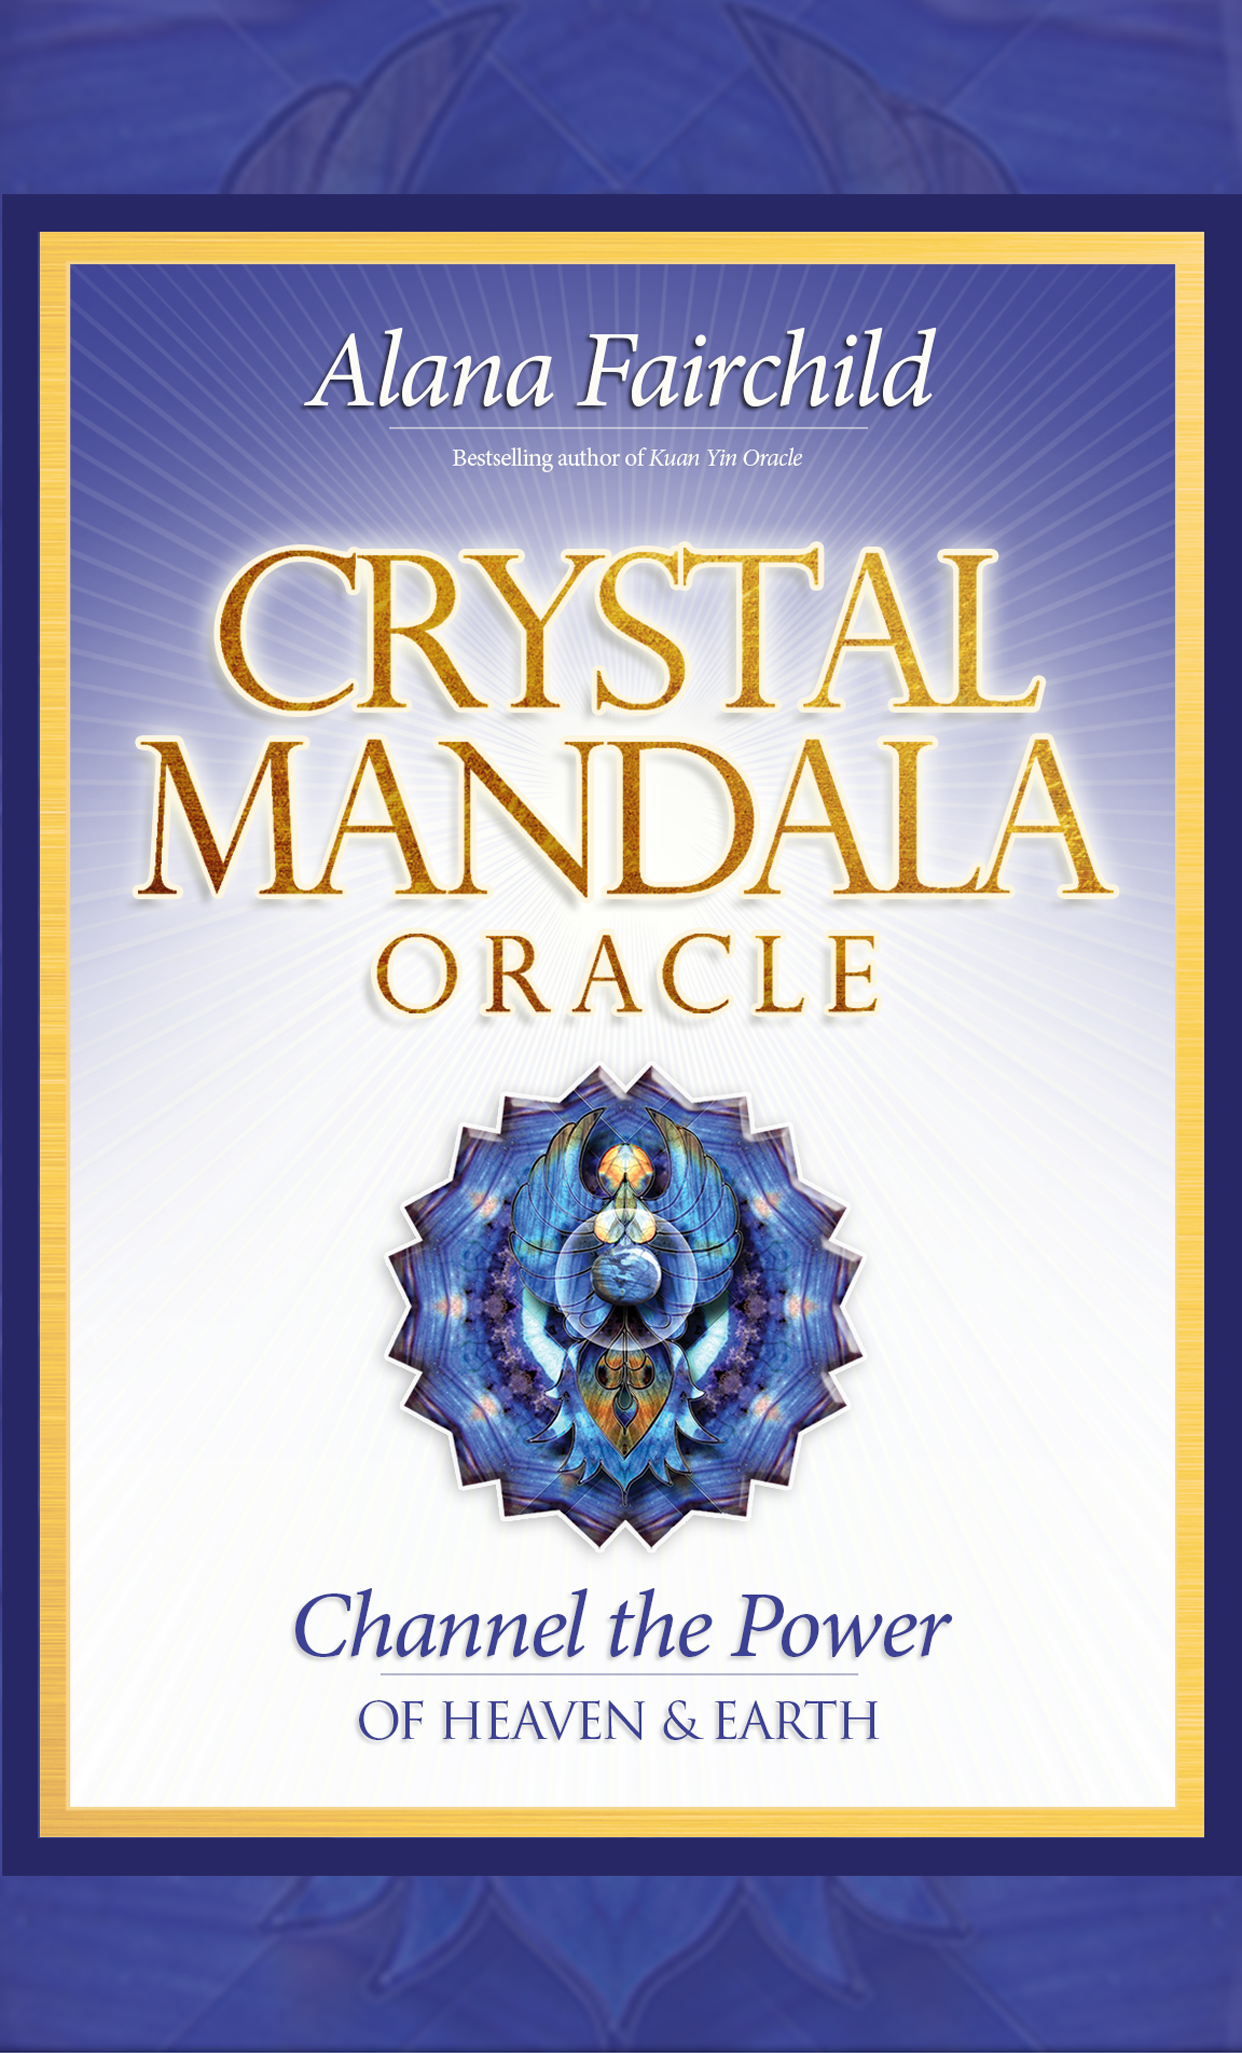 Crystal Mandala Oracle by Alana Fairchild